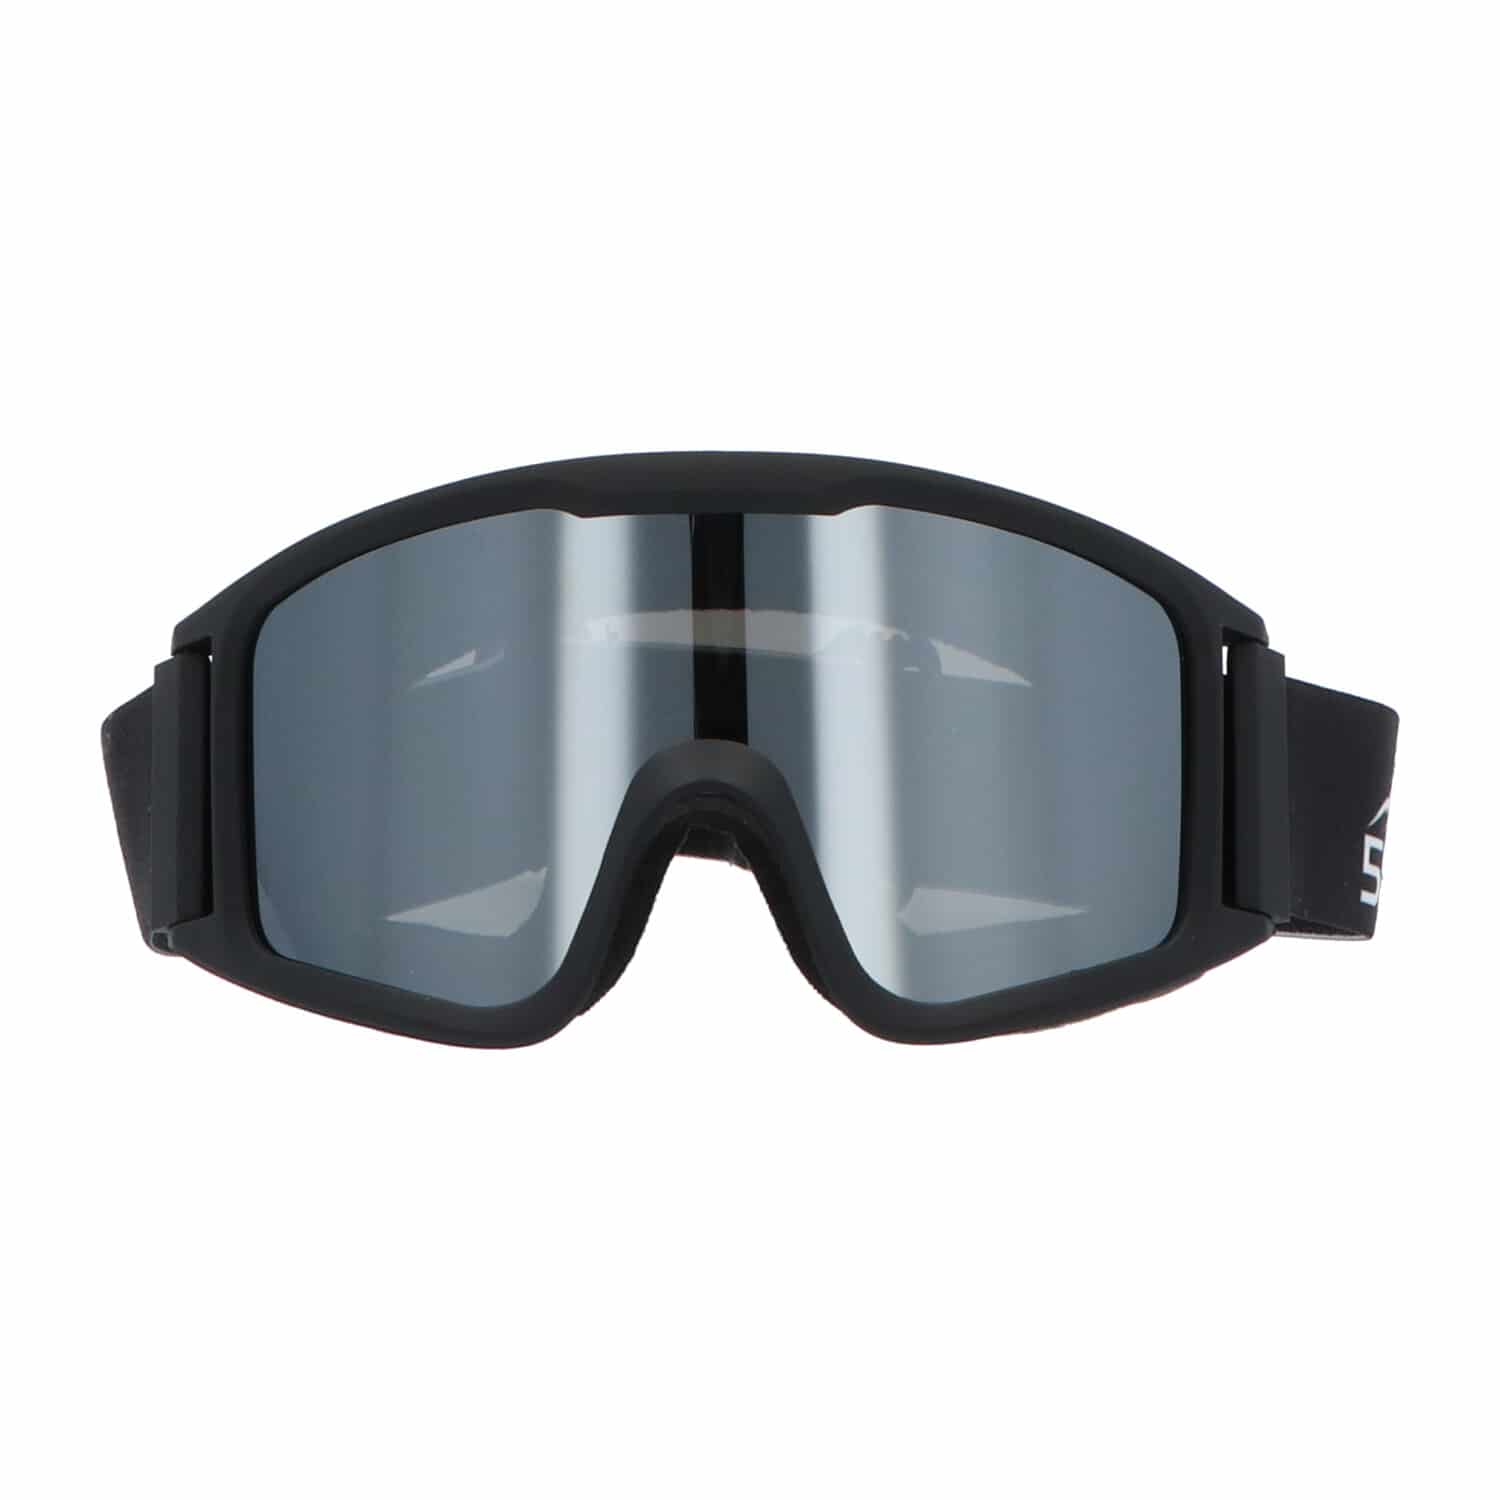 5one® Alpine 4 Silver Skibril met anti-condens en bewaarcase - UV 400